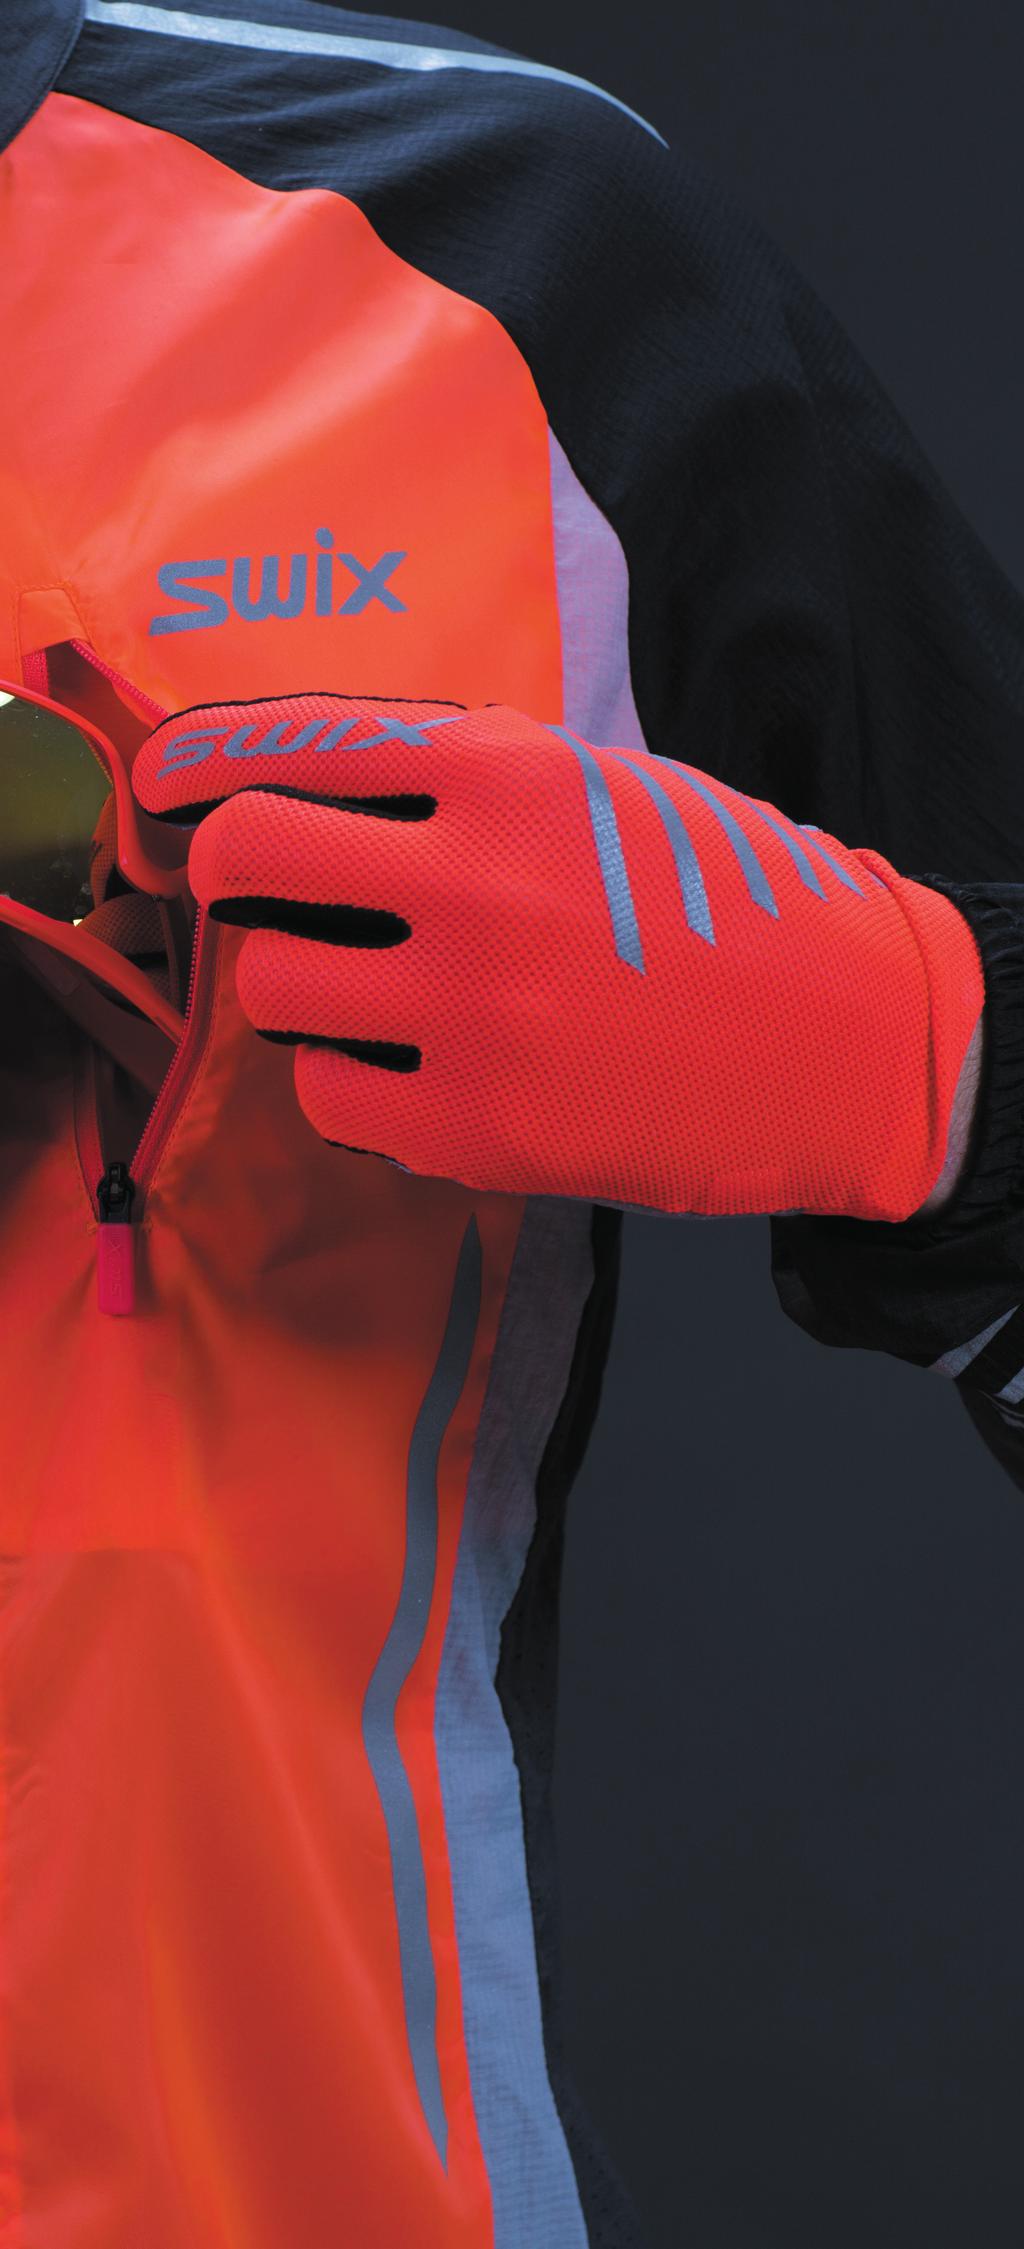 RADIANT Nová kolekce vytvořená pro co nejlepší viditelnost, skládající se z bundy, svršků, kalhot, rukavic a čepice/ čelenky. Pro nejvyšší možnou viditelnost je použitá neonově červená barva.